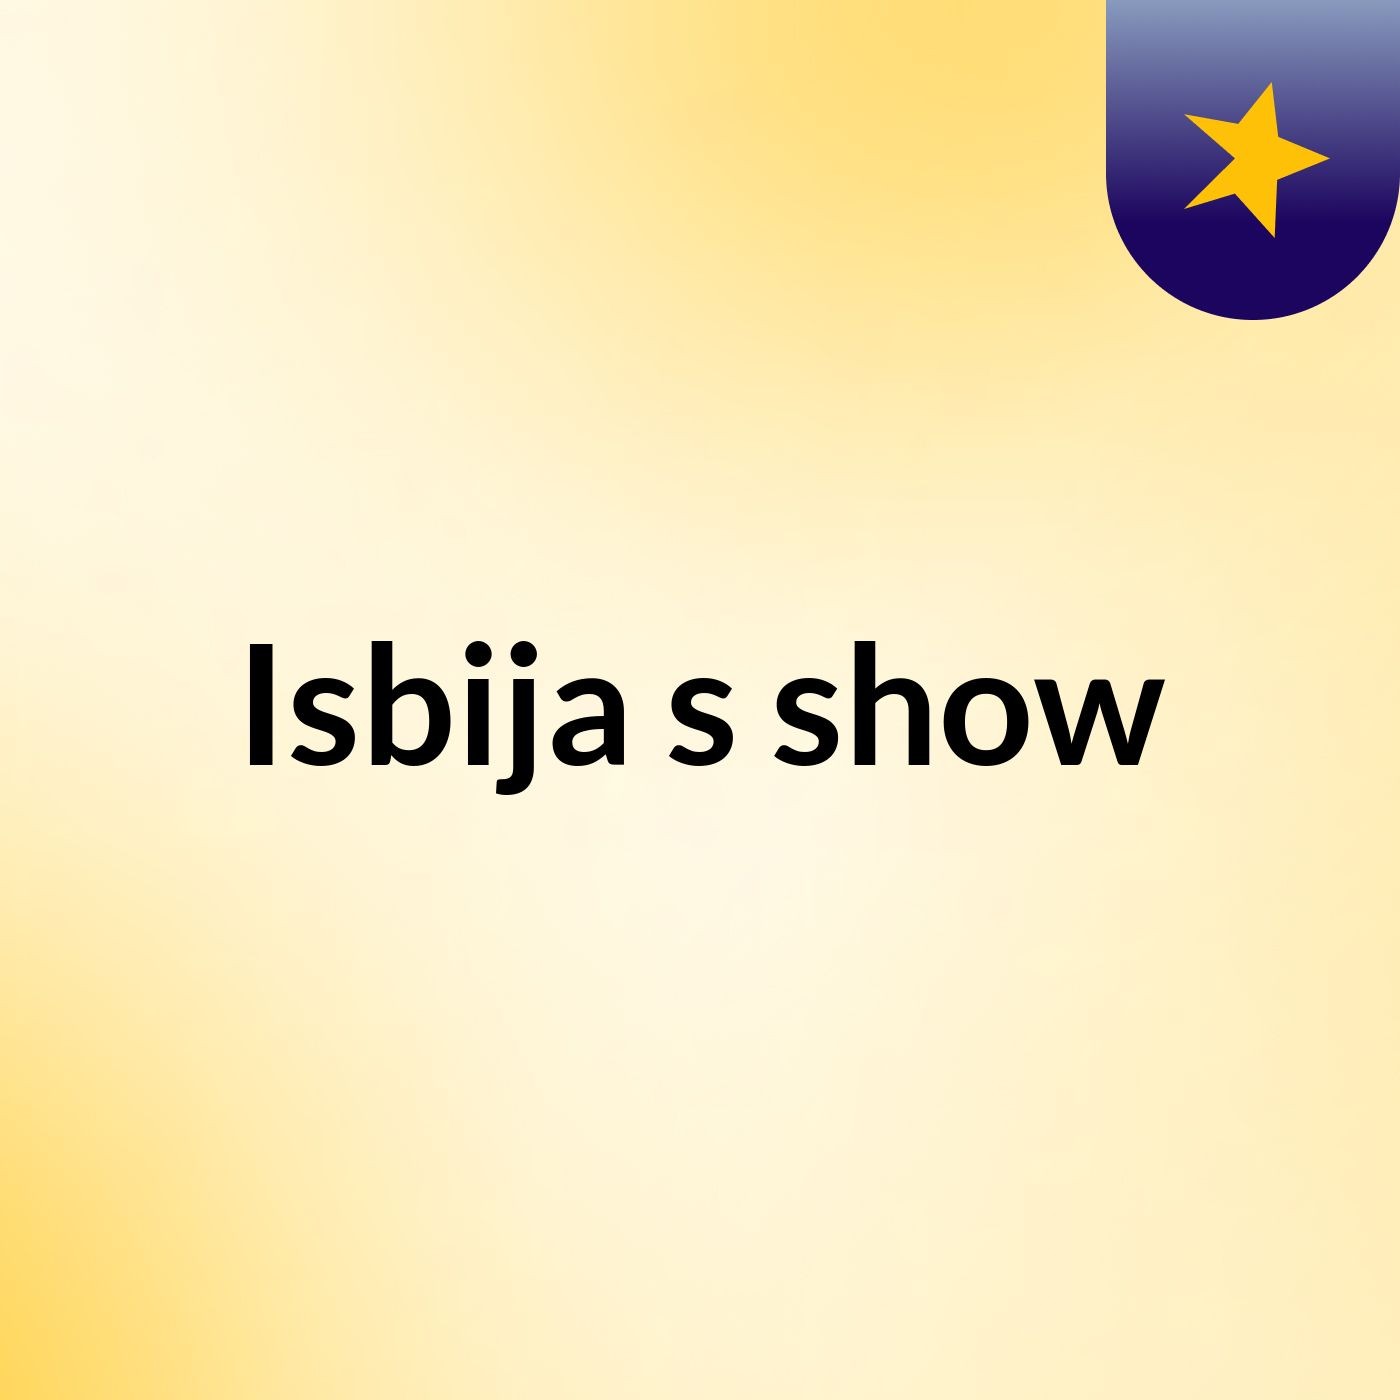 Isbija's show